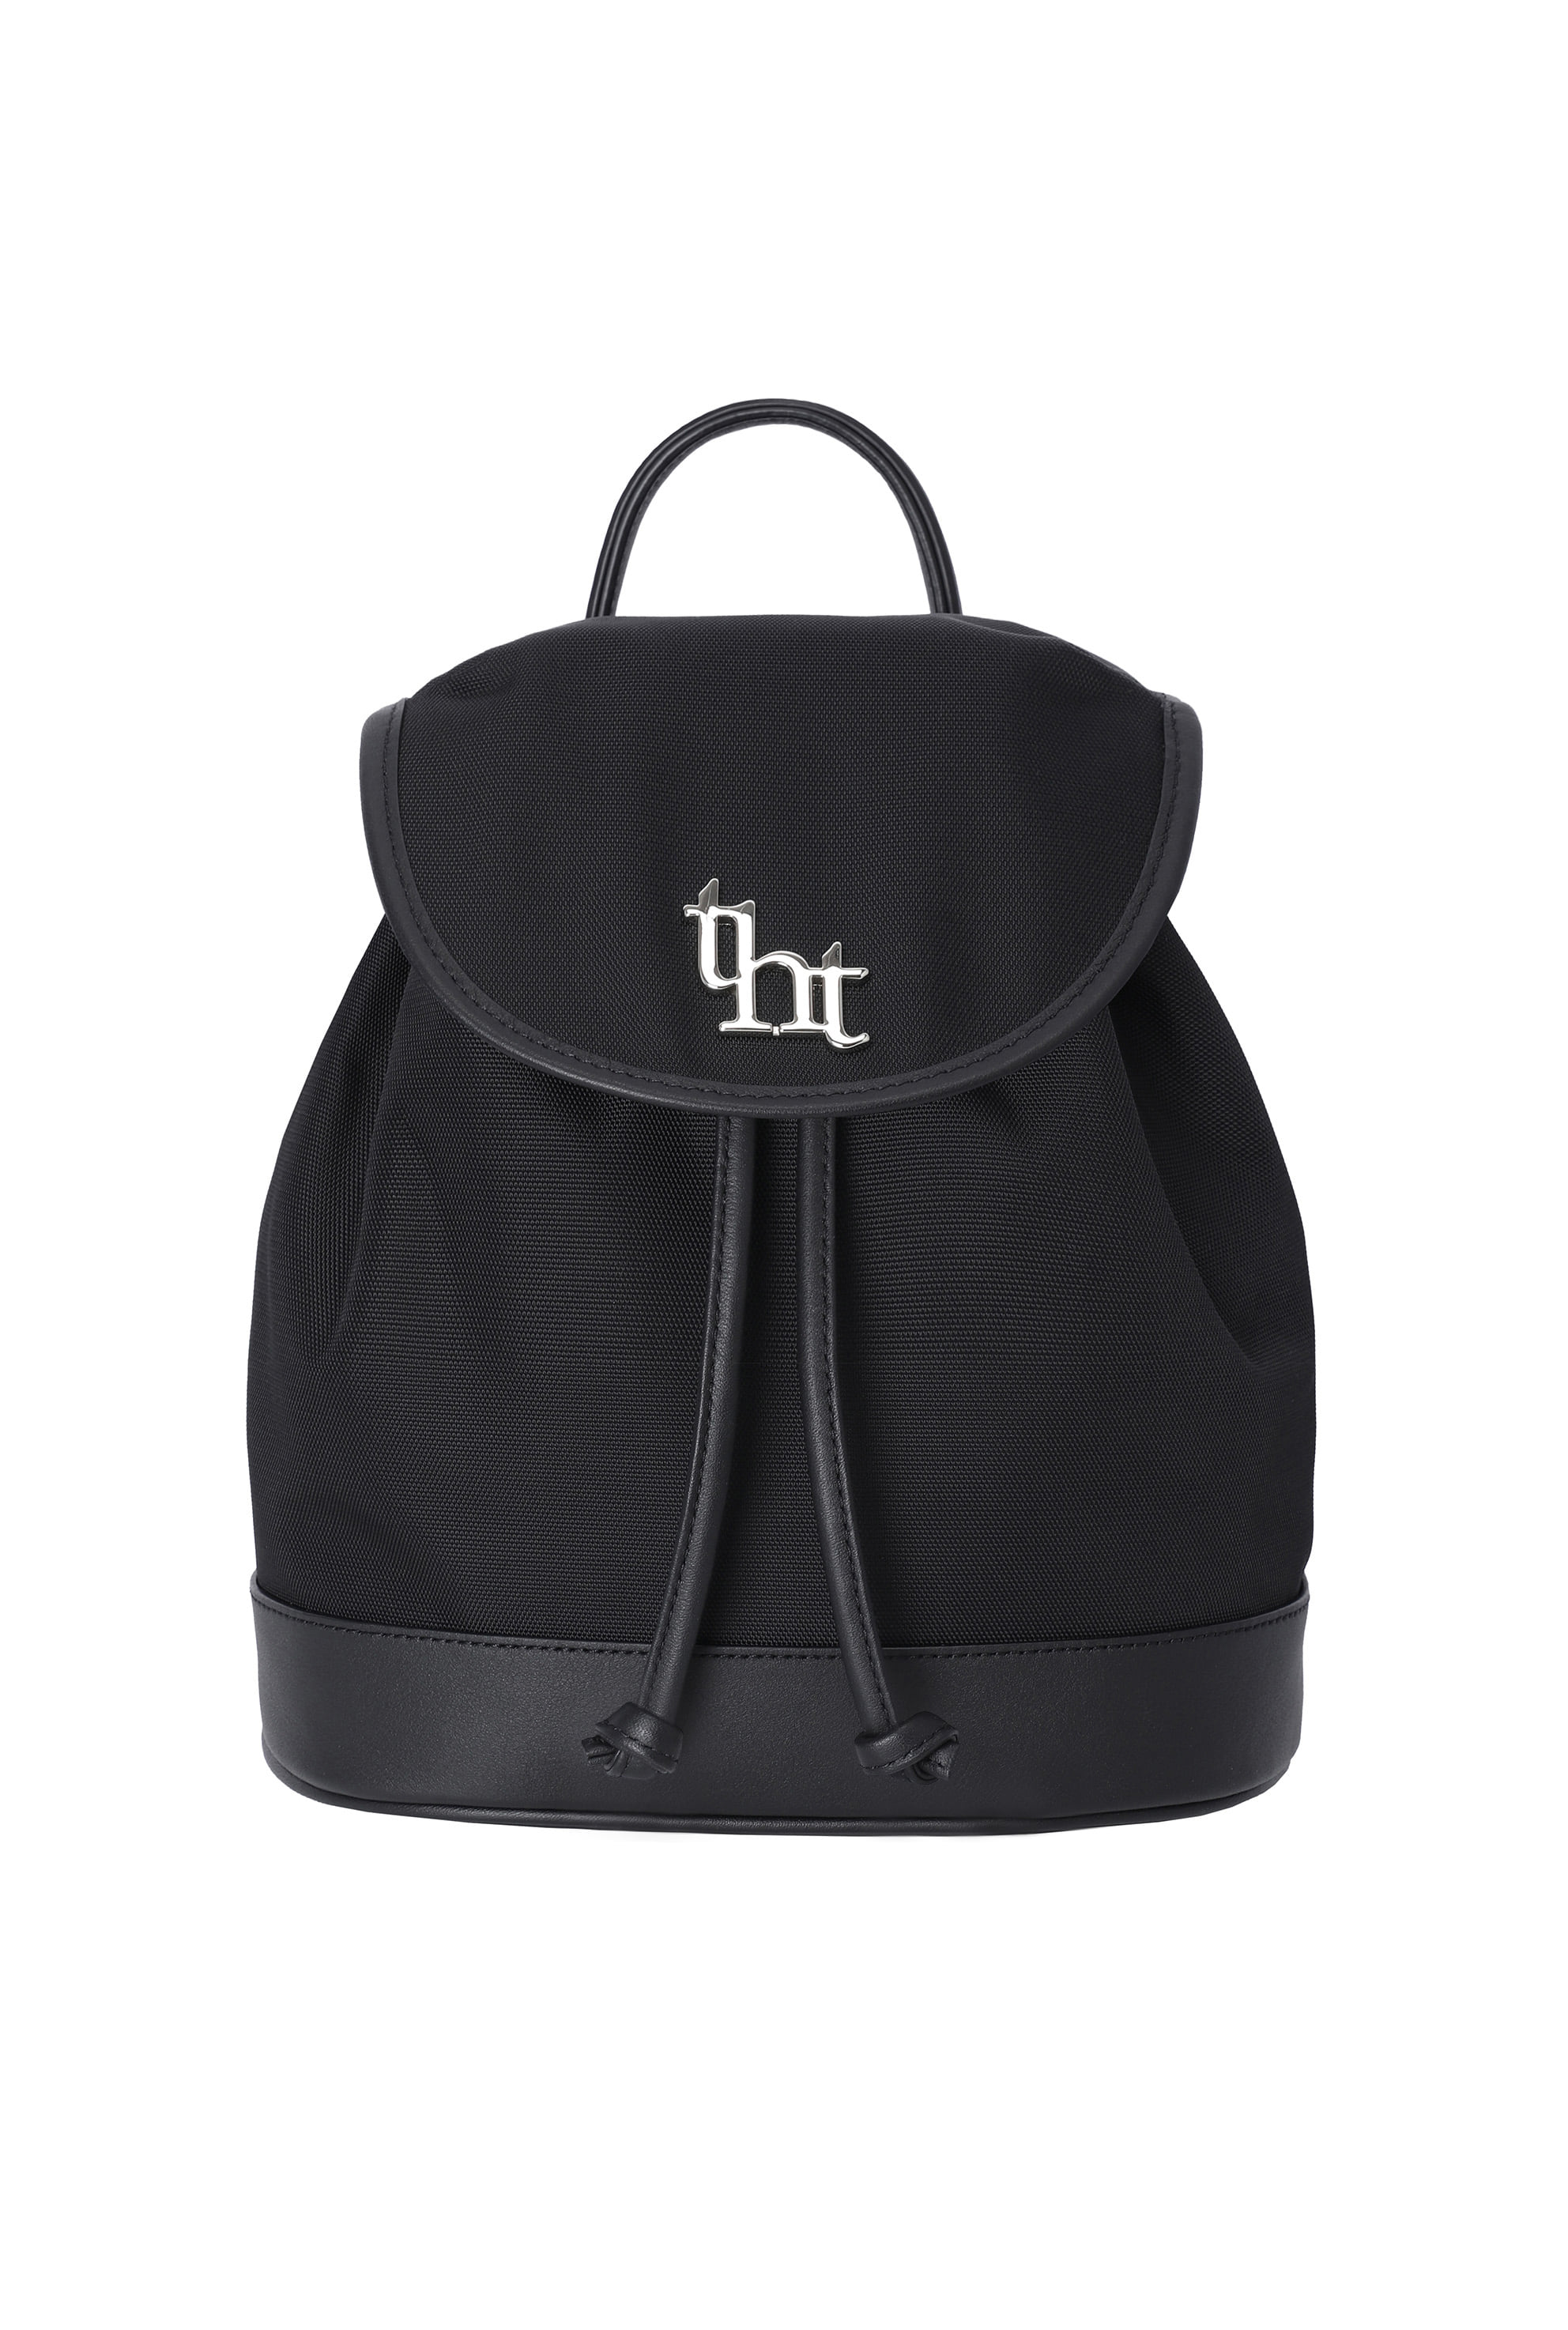 Threetimes Acorn backpack Black-